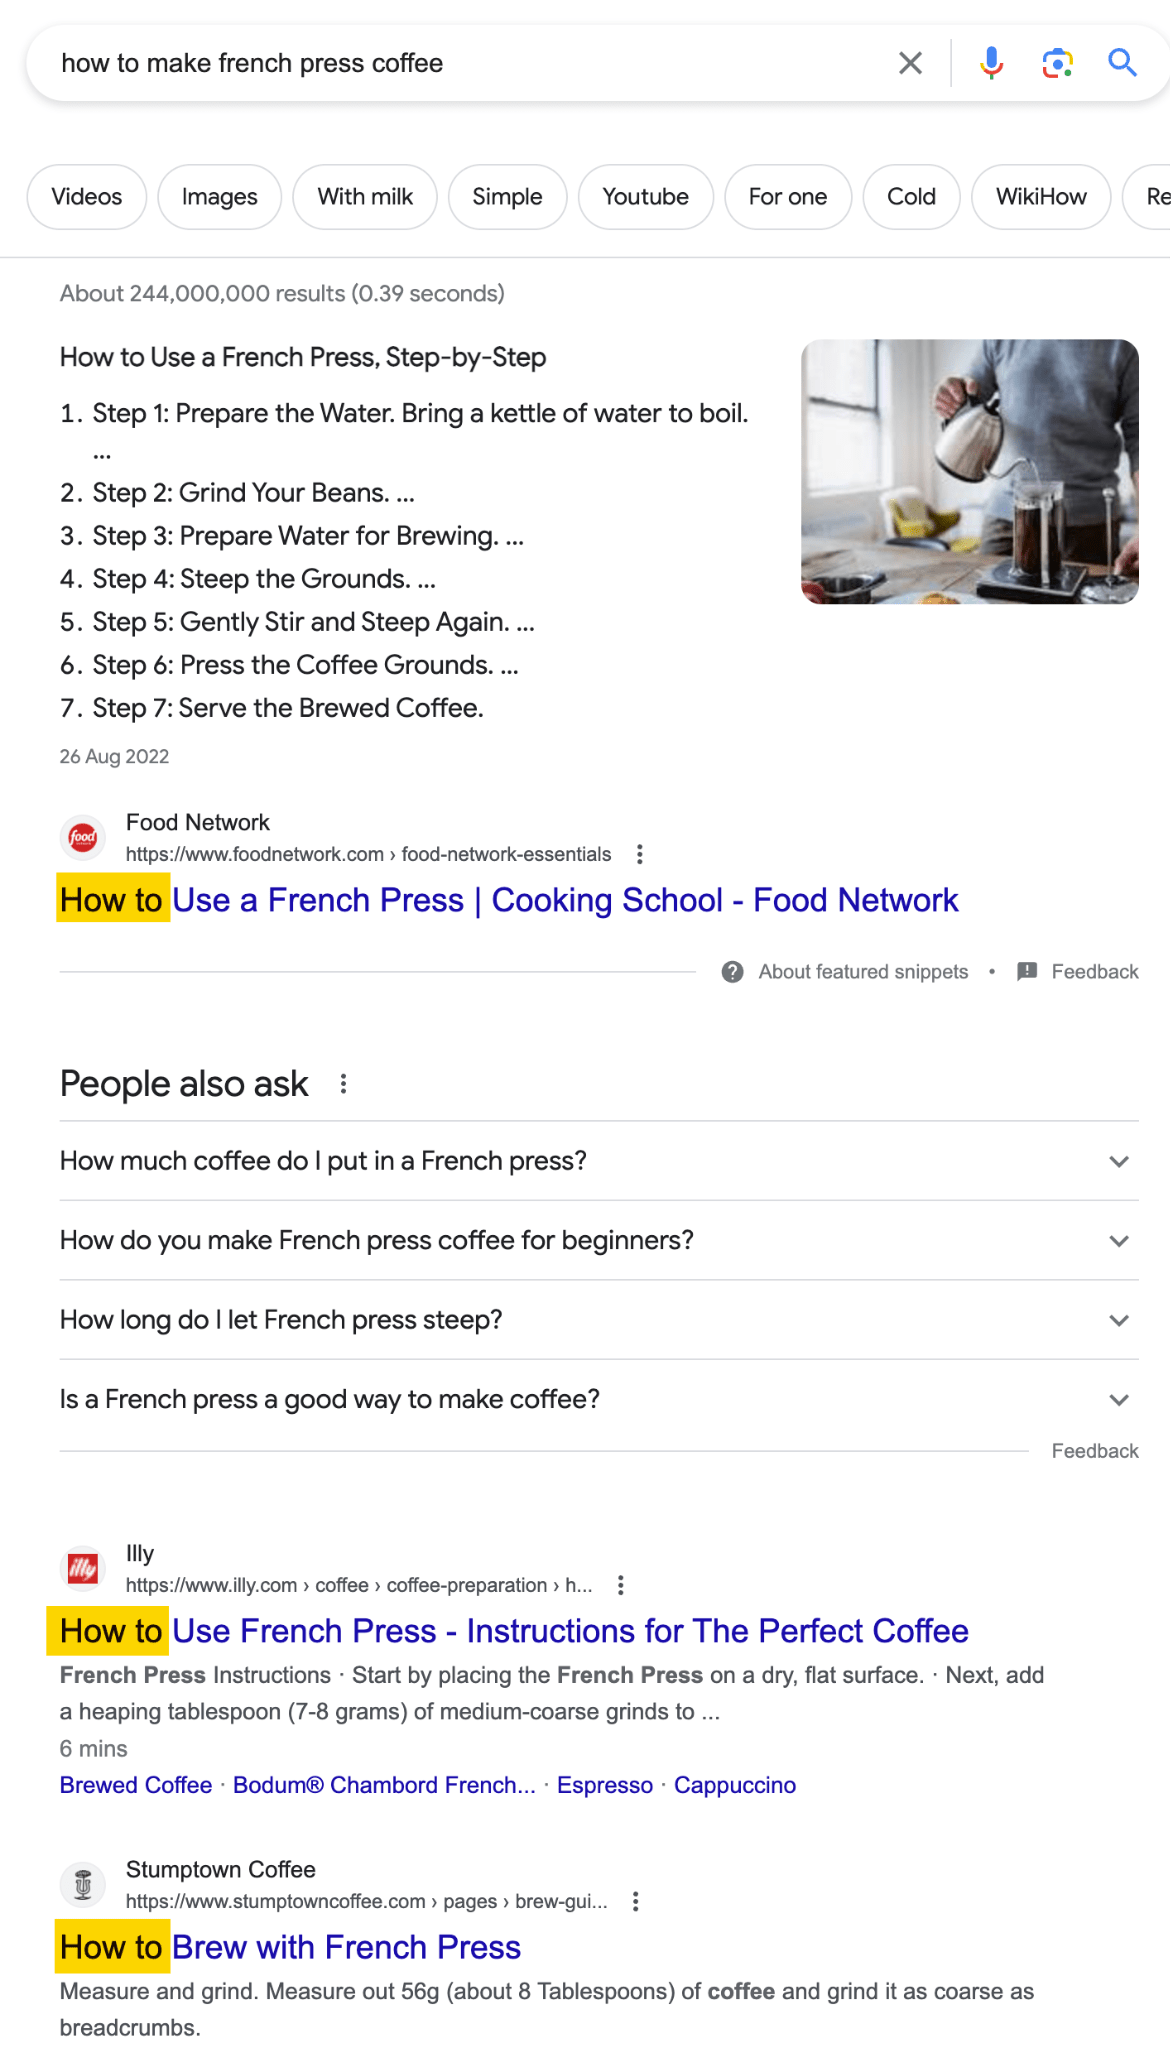 Google-zoekresultaten voor 'hoe maak je French Press Coffee' laten zien dat zoekers een handleiding willen